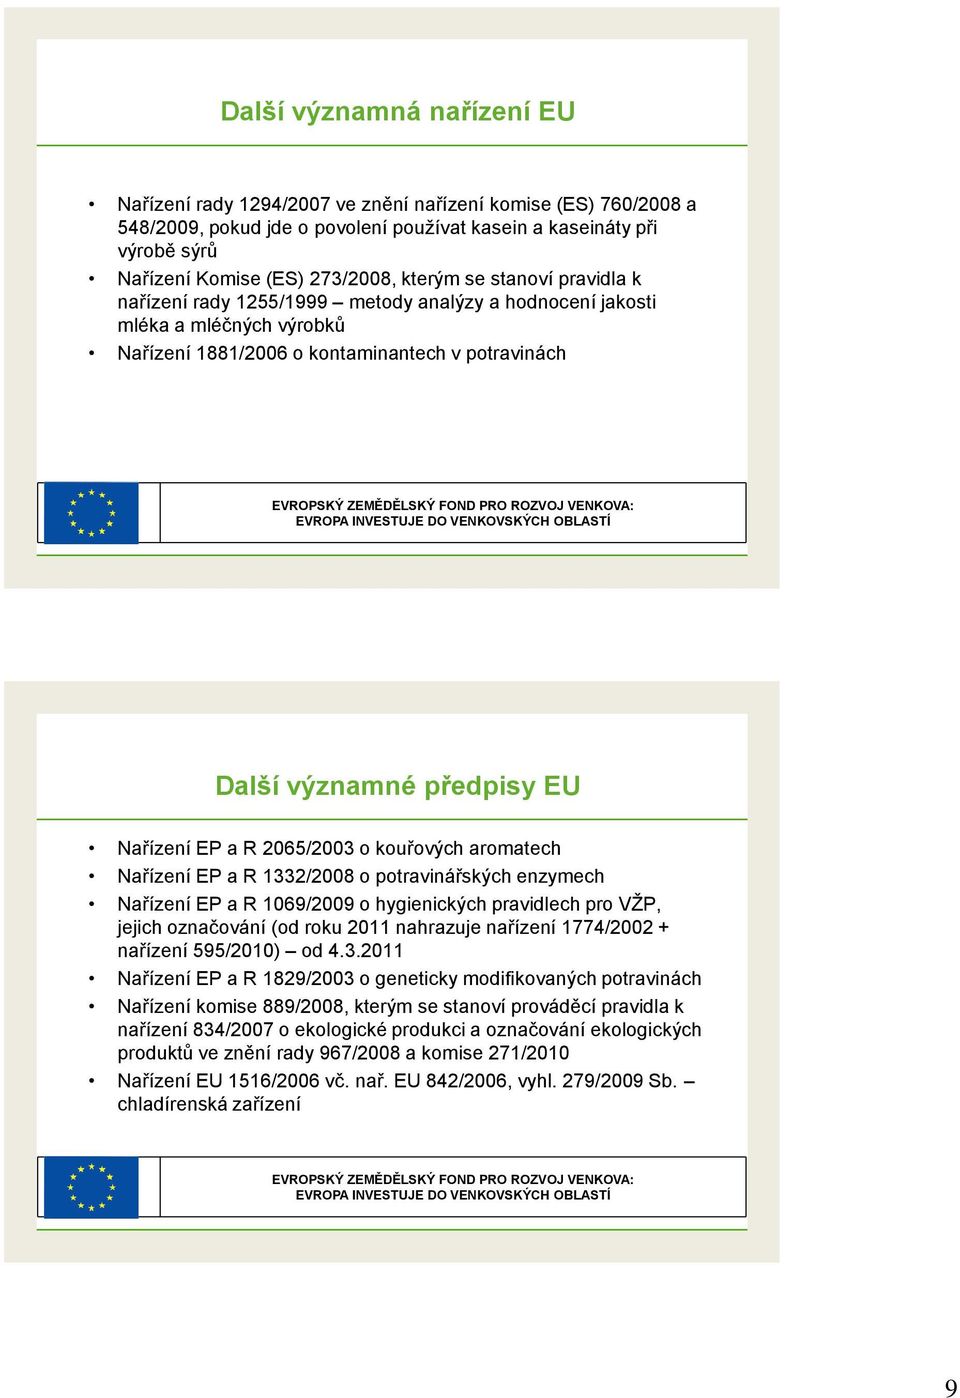 VENKOVA: EVROPA INVESTUJE DO VENKOVSKÝCH OBLASTÍ Další významné předpisy EU Nařízení EP a R 2065/2003 o kouřových aromatech Nařízení EP a R 1332/2008 o potravinářských enzymech Nařízení EP a R